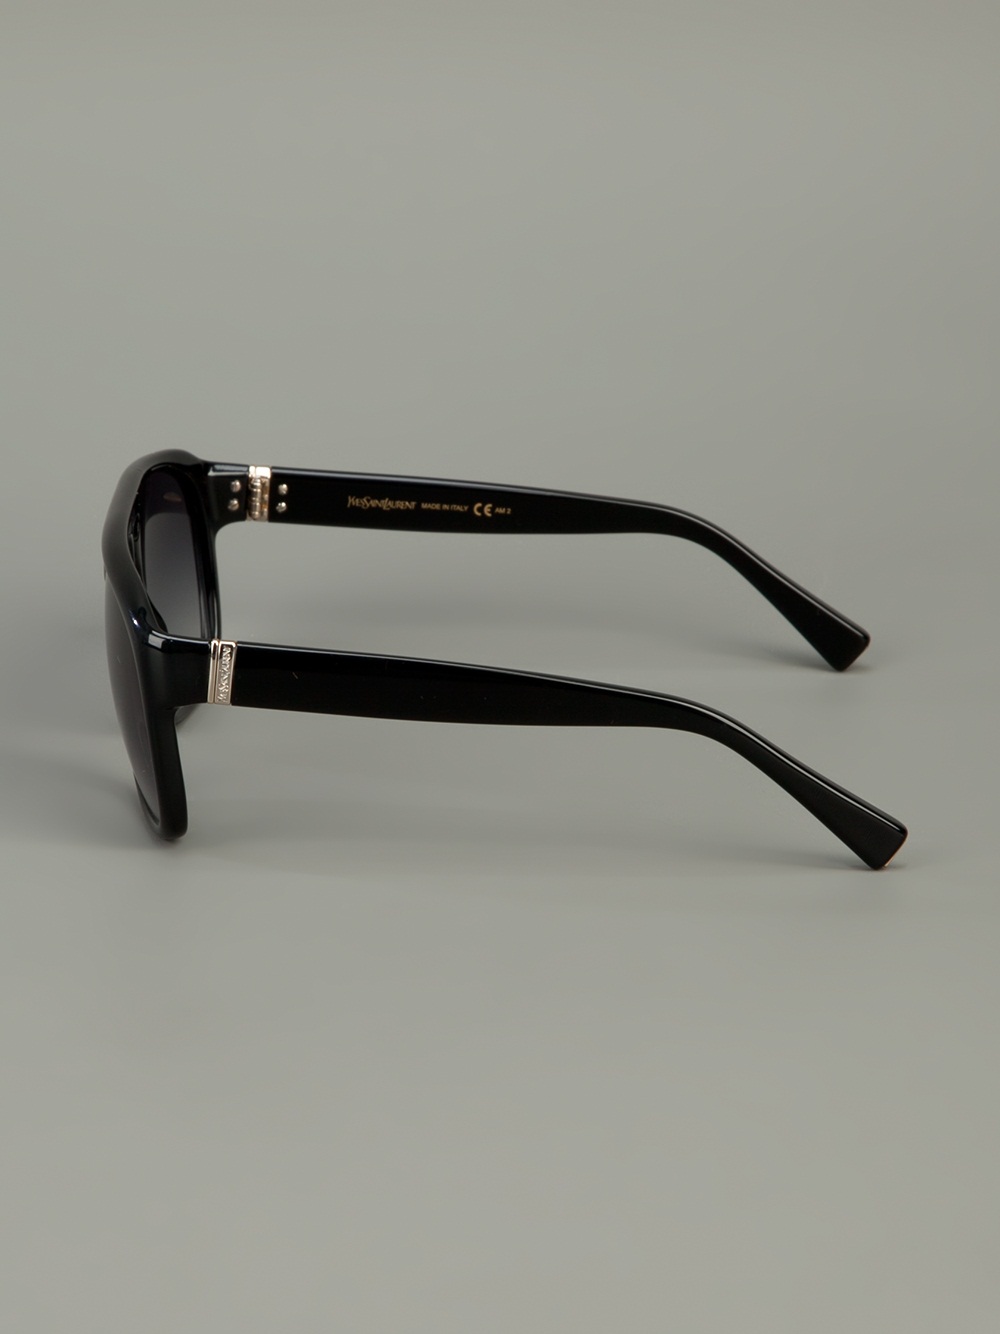 Saint Laurent Square Frame Sunglasses in Black for Men - Lyst